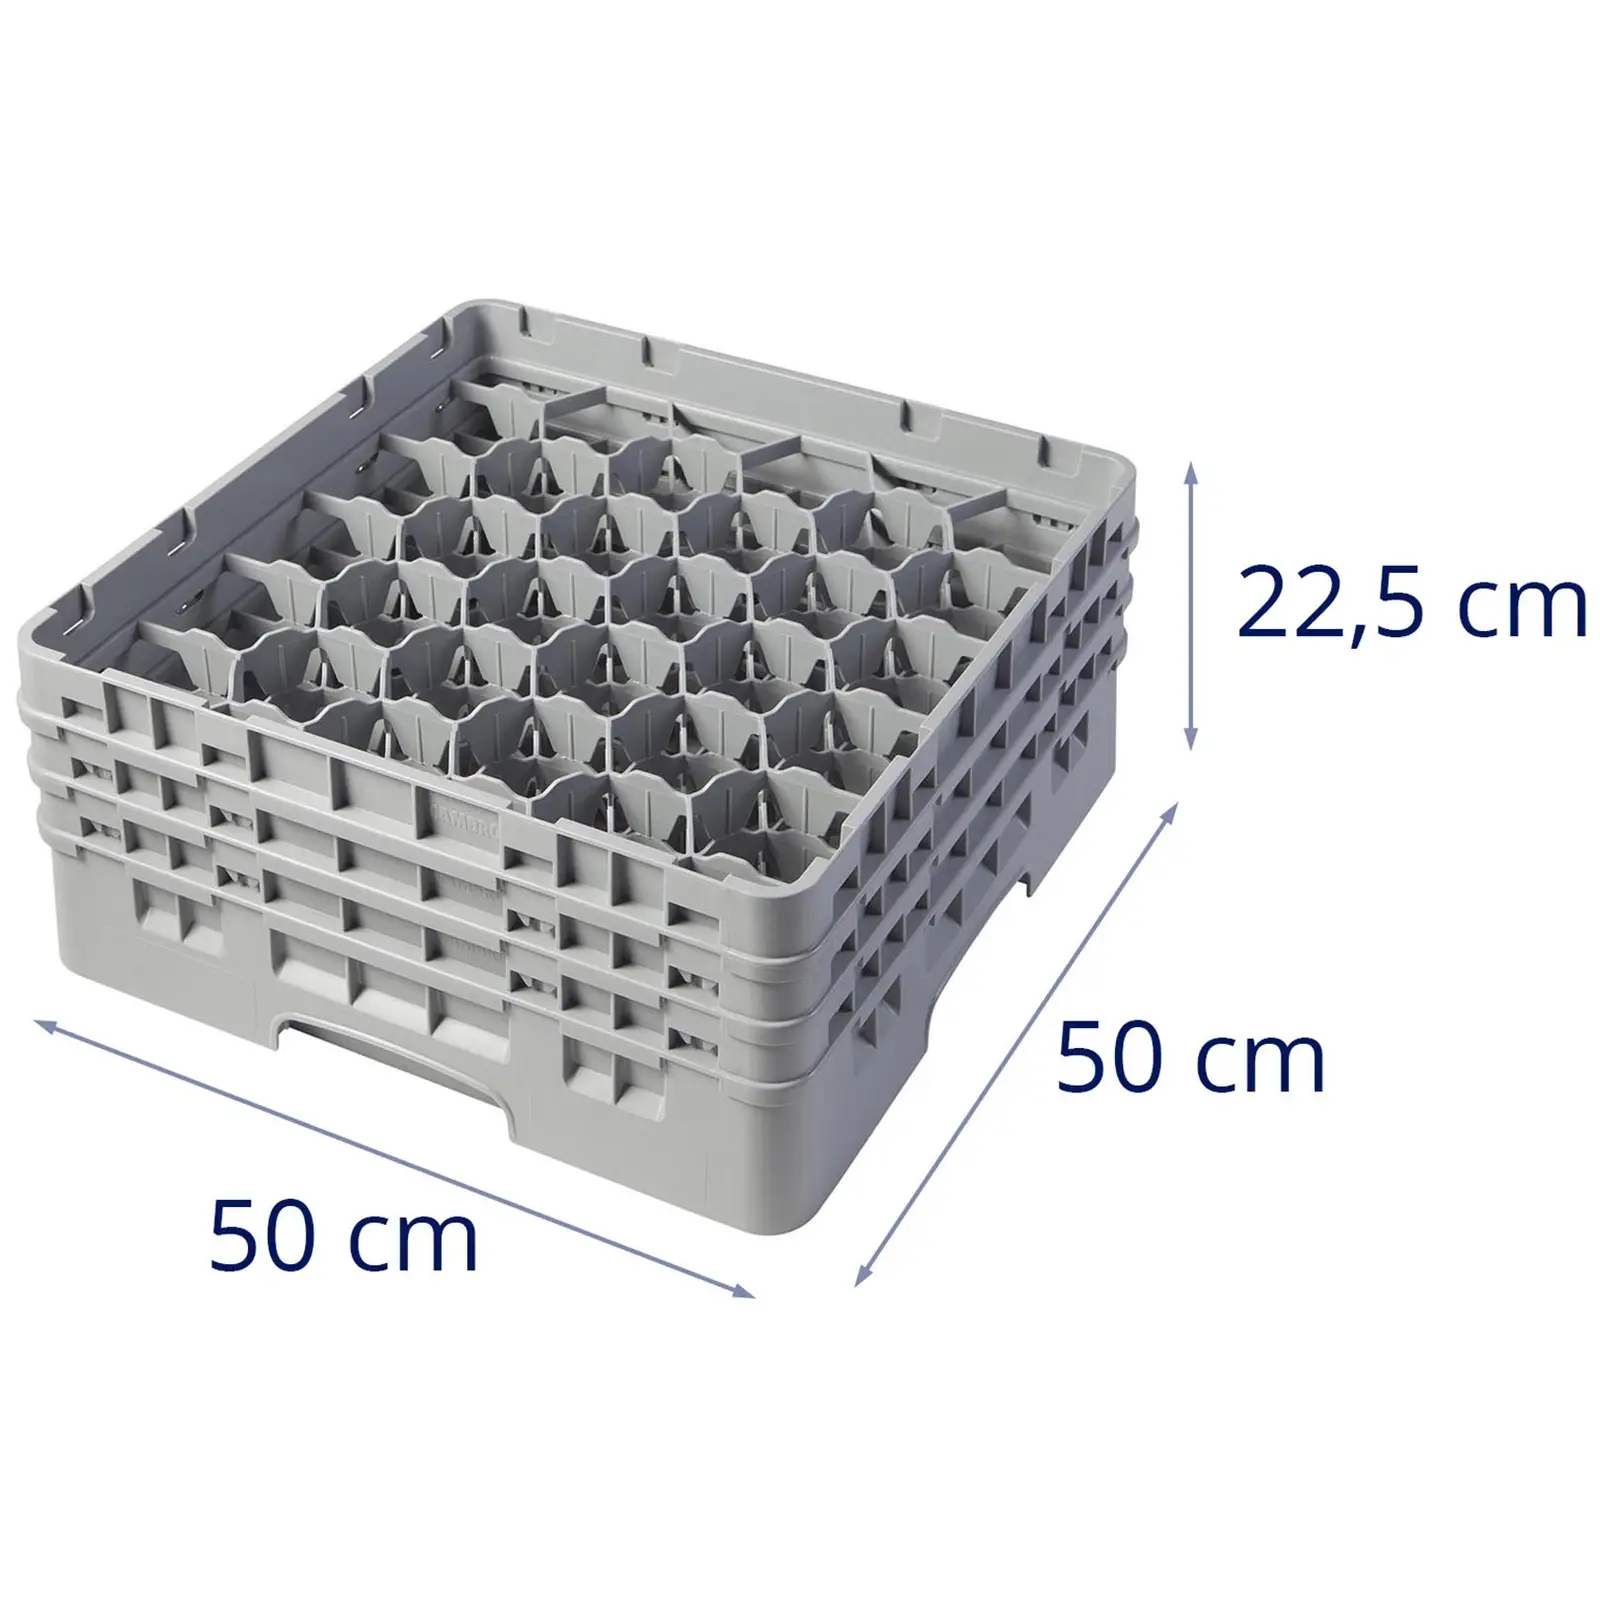 Opvaskekurv til glas til industriopvaskemaskine - 30 rum - 50 x 50 x 22,5 cm - glashøjde: 17,4 cm